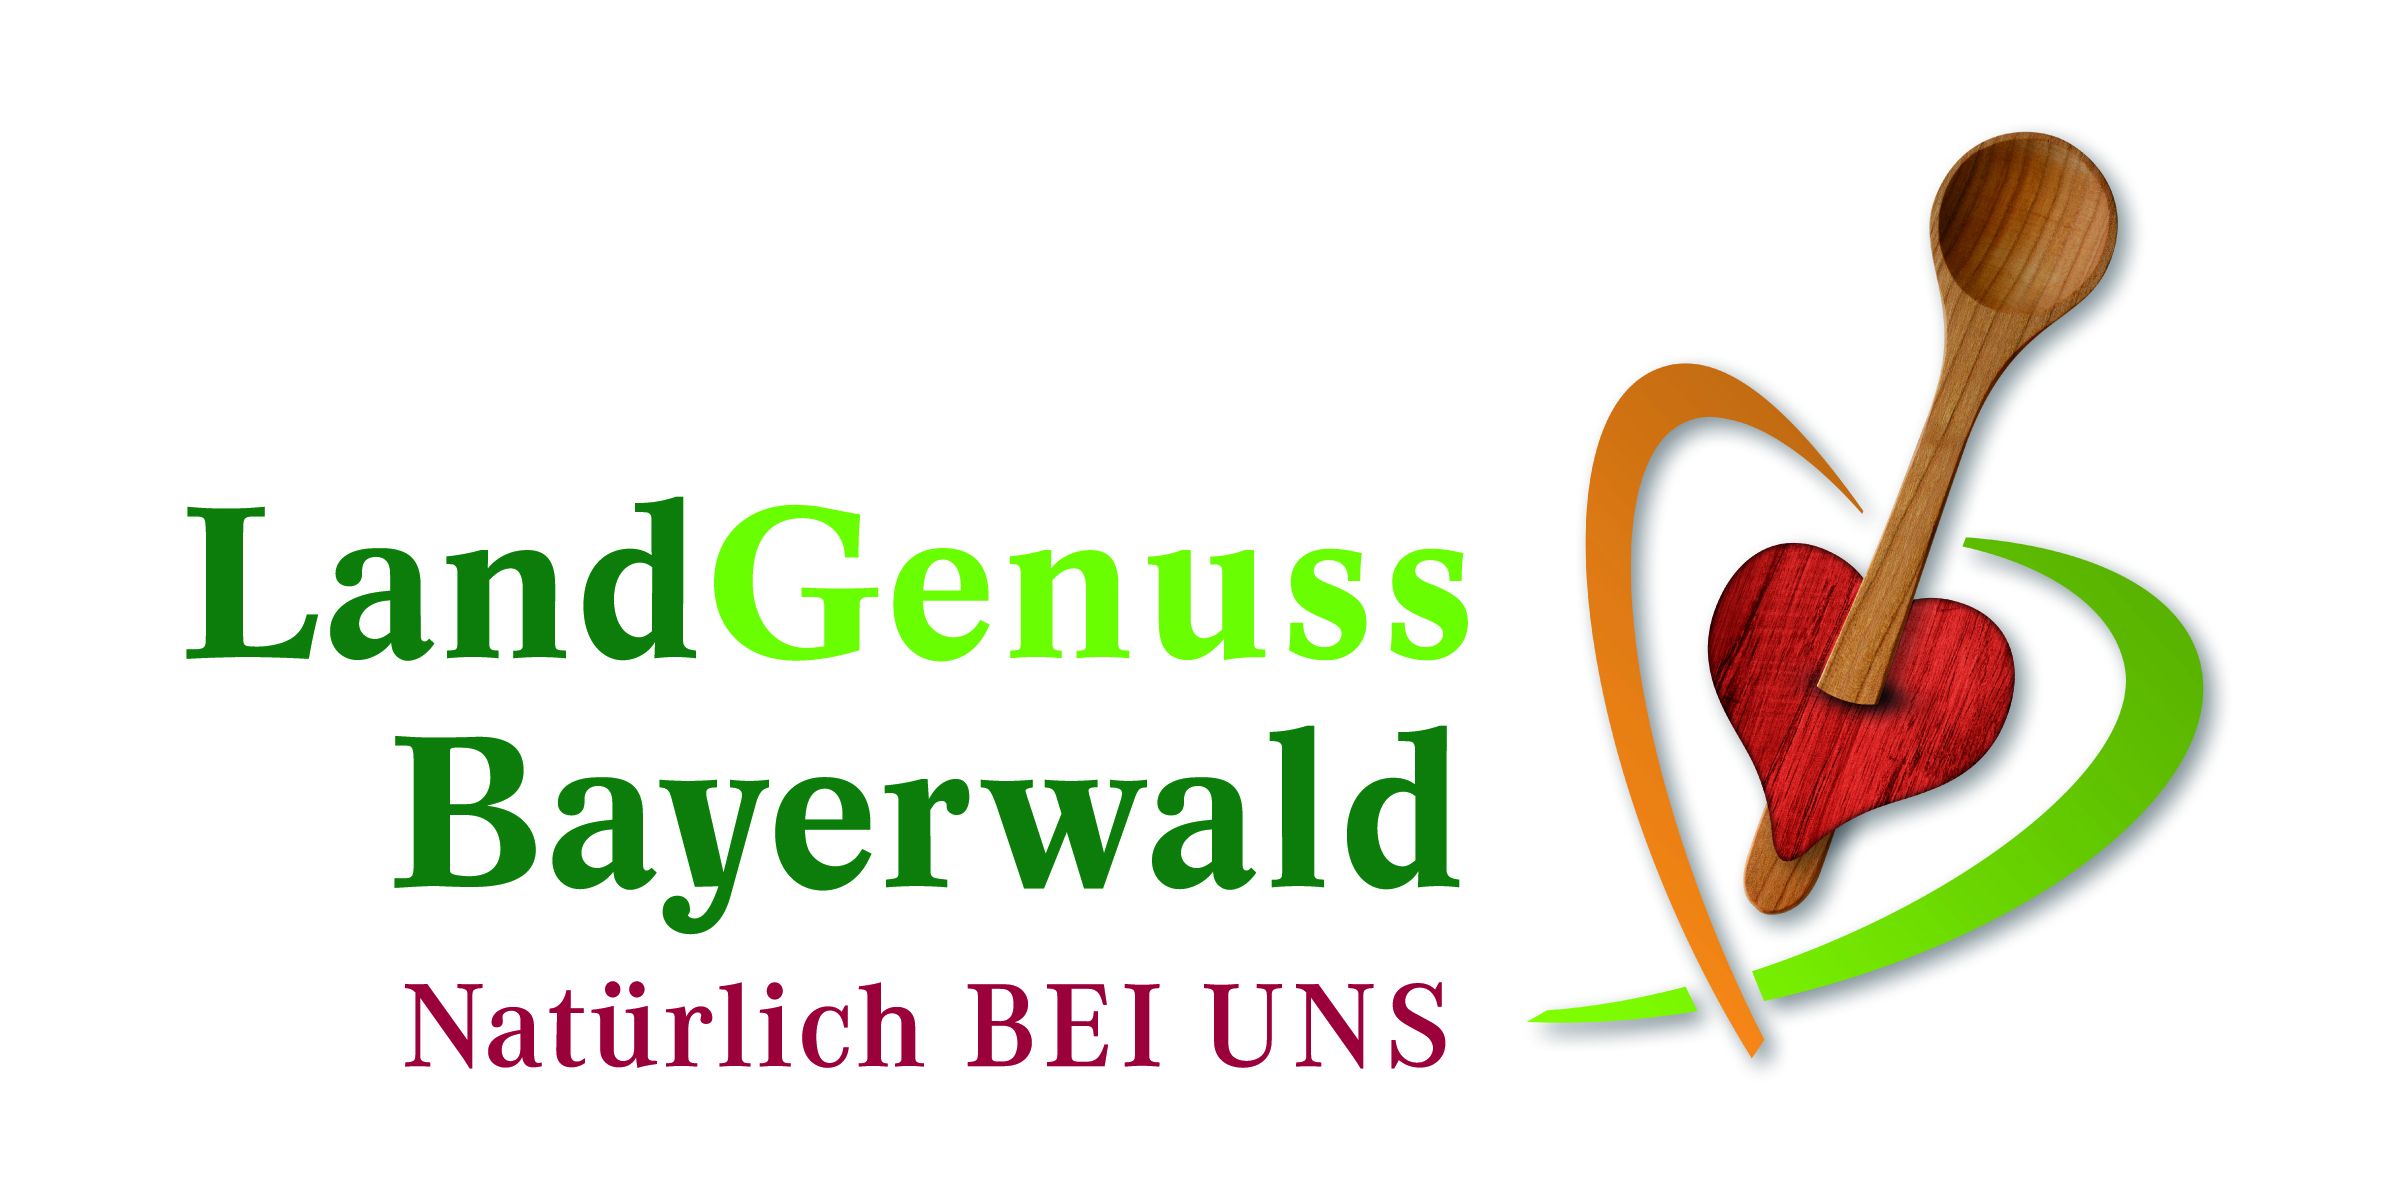 Zur externen Seite Landgenuss Bayerwald unter www.land-genuss.bayern